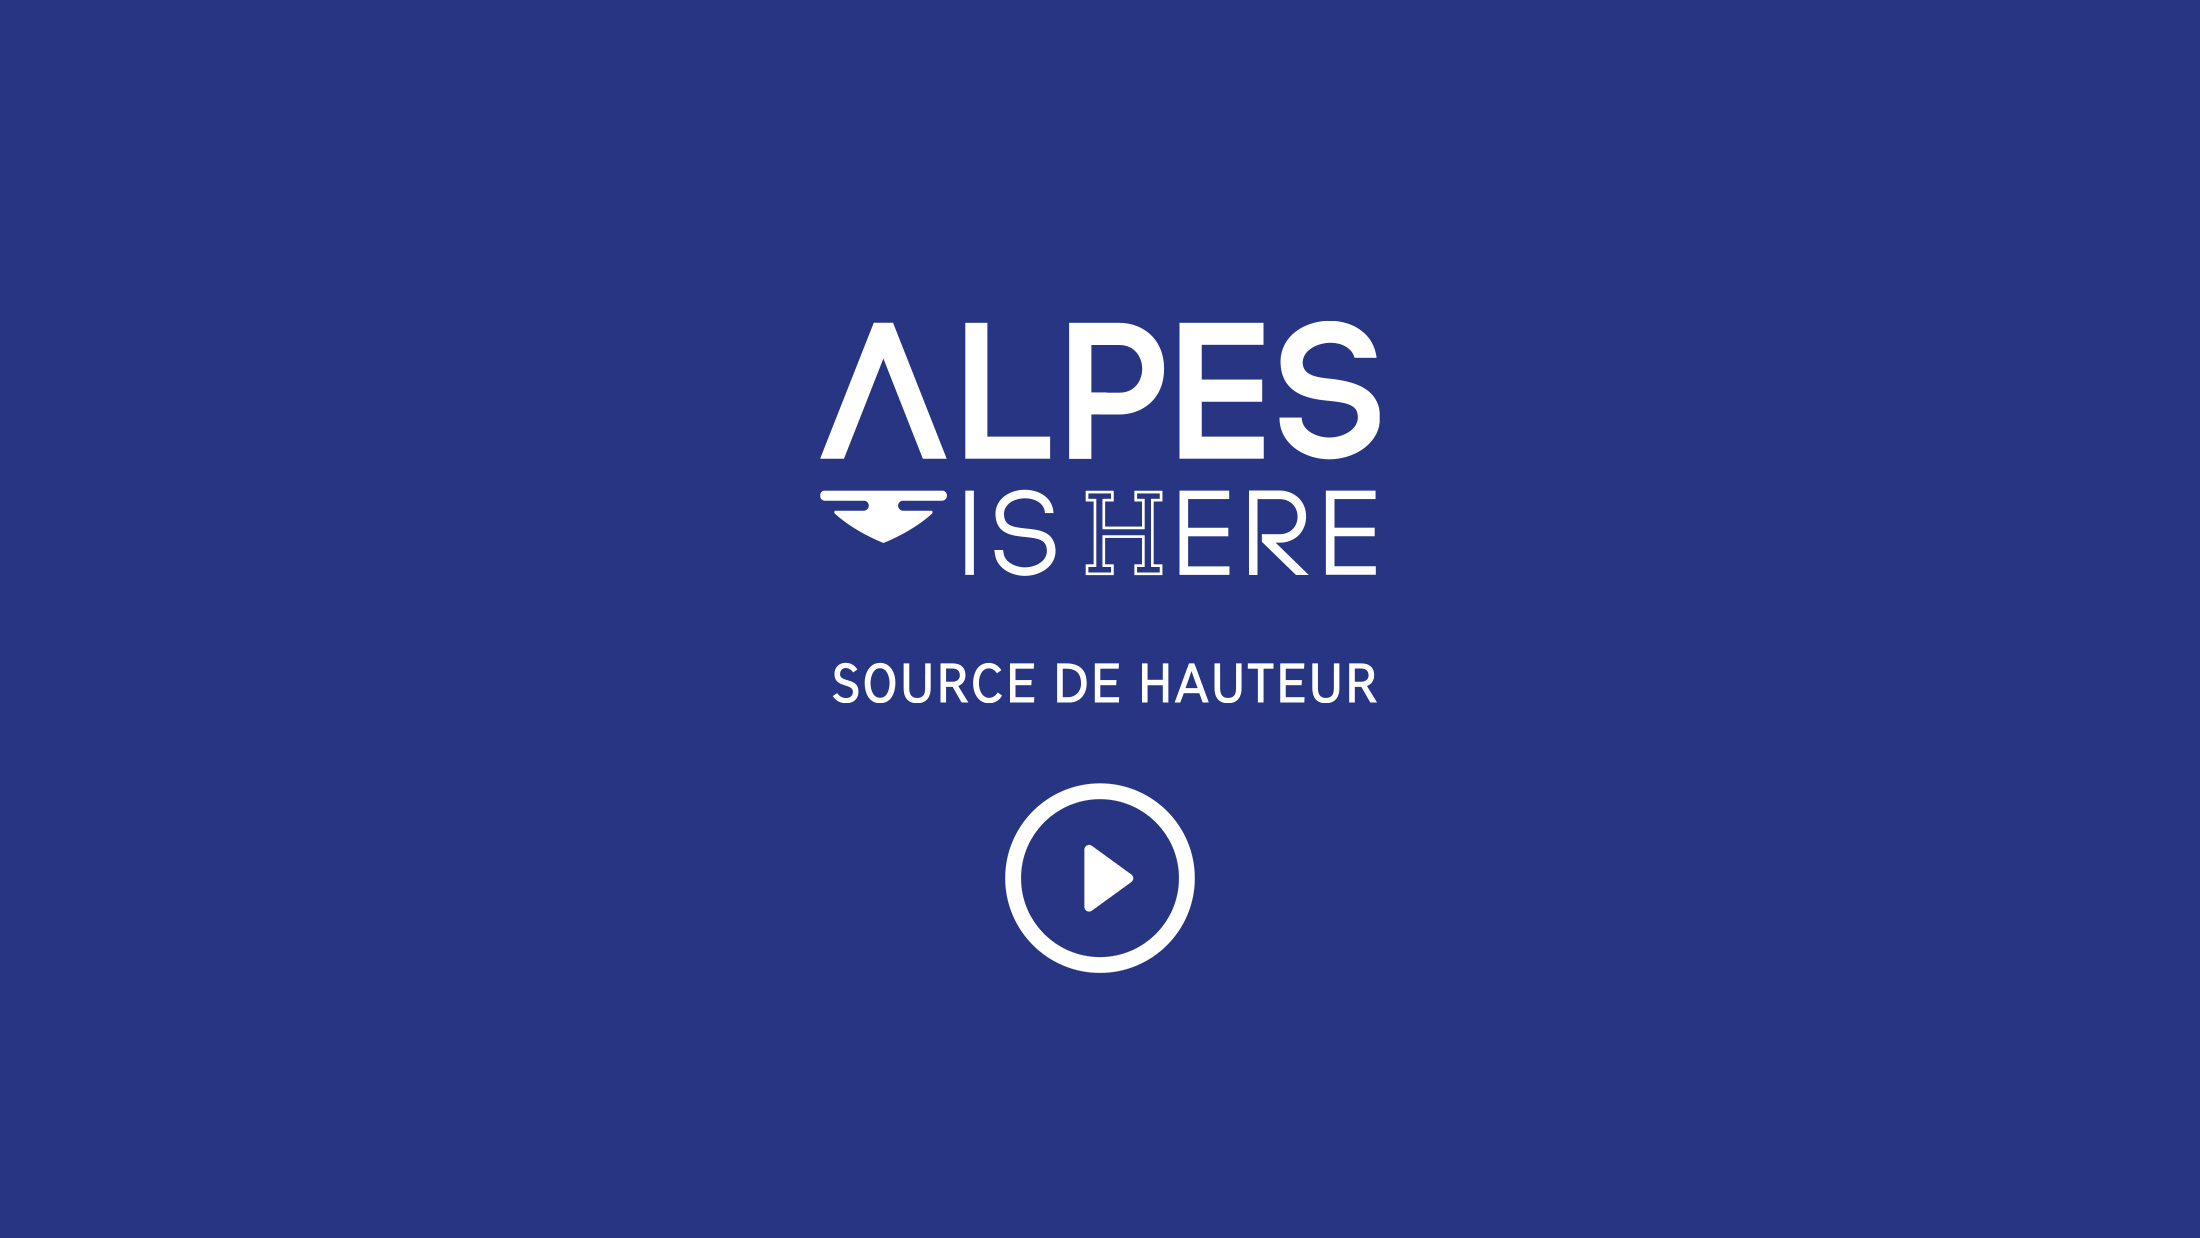 Alpes Ishere, des vidéos pour le territoire